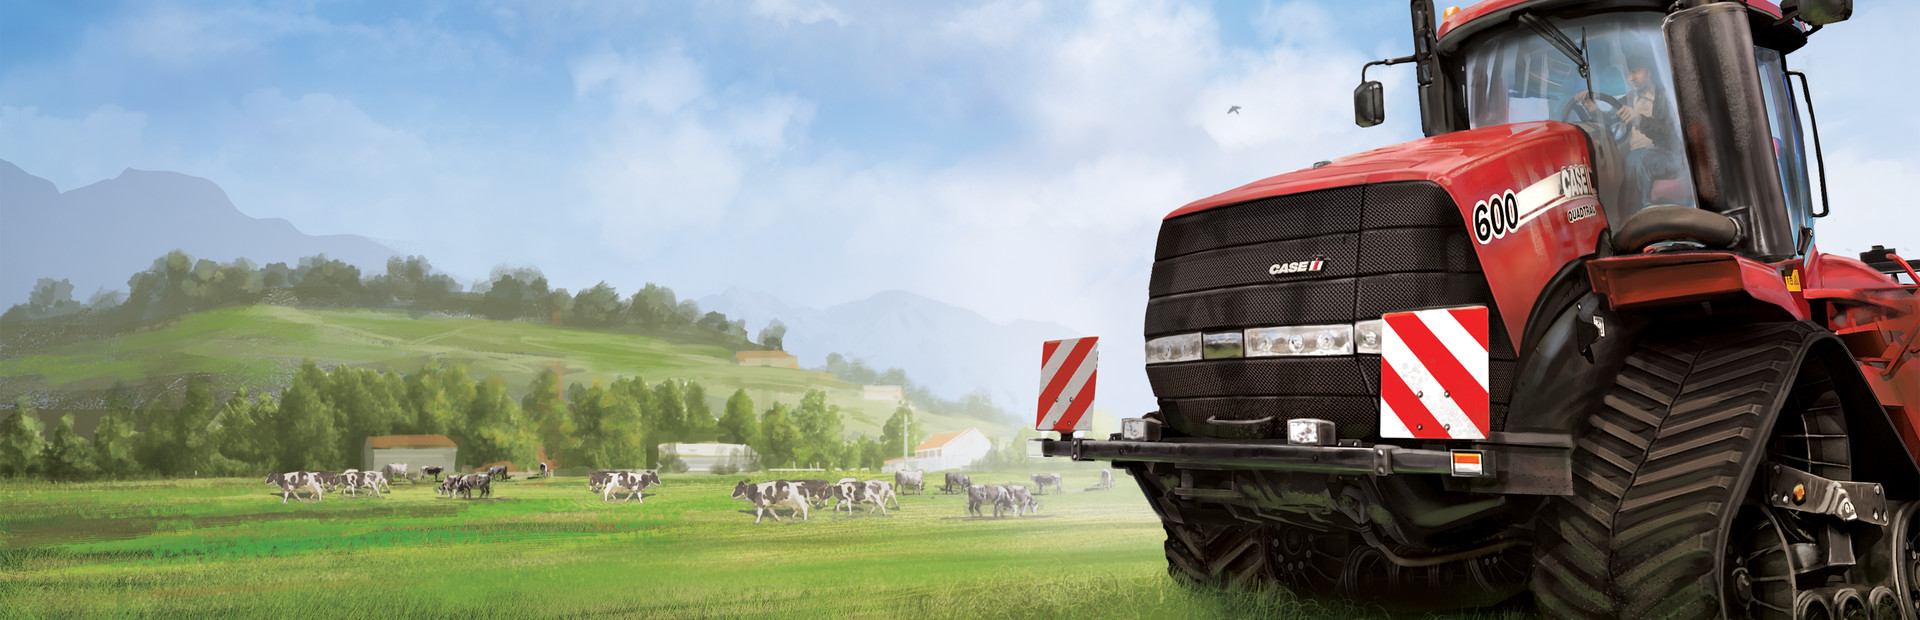 Farming Simulator 2013 Titanium Edition cover image